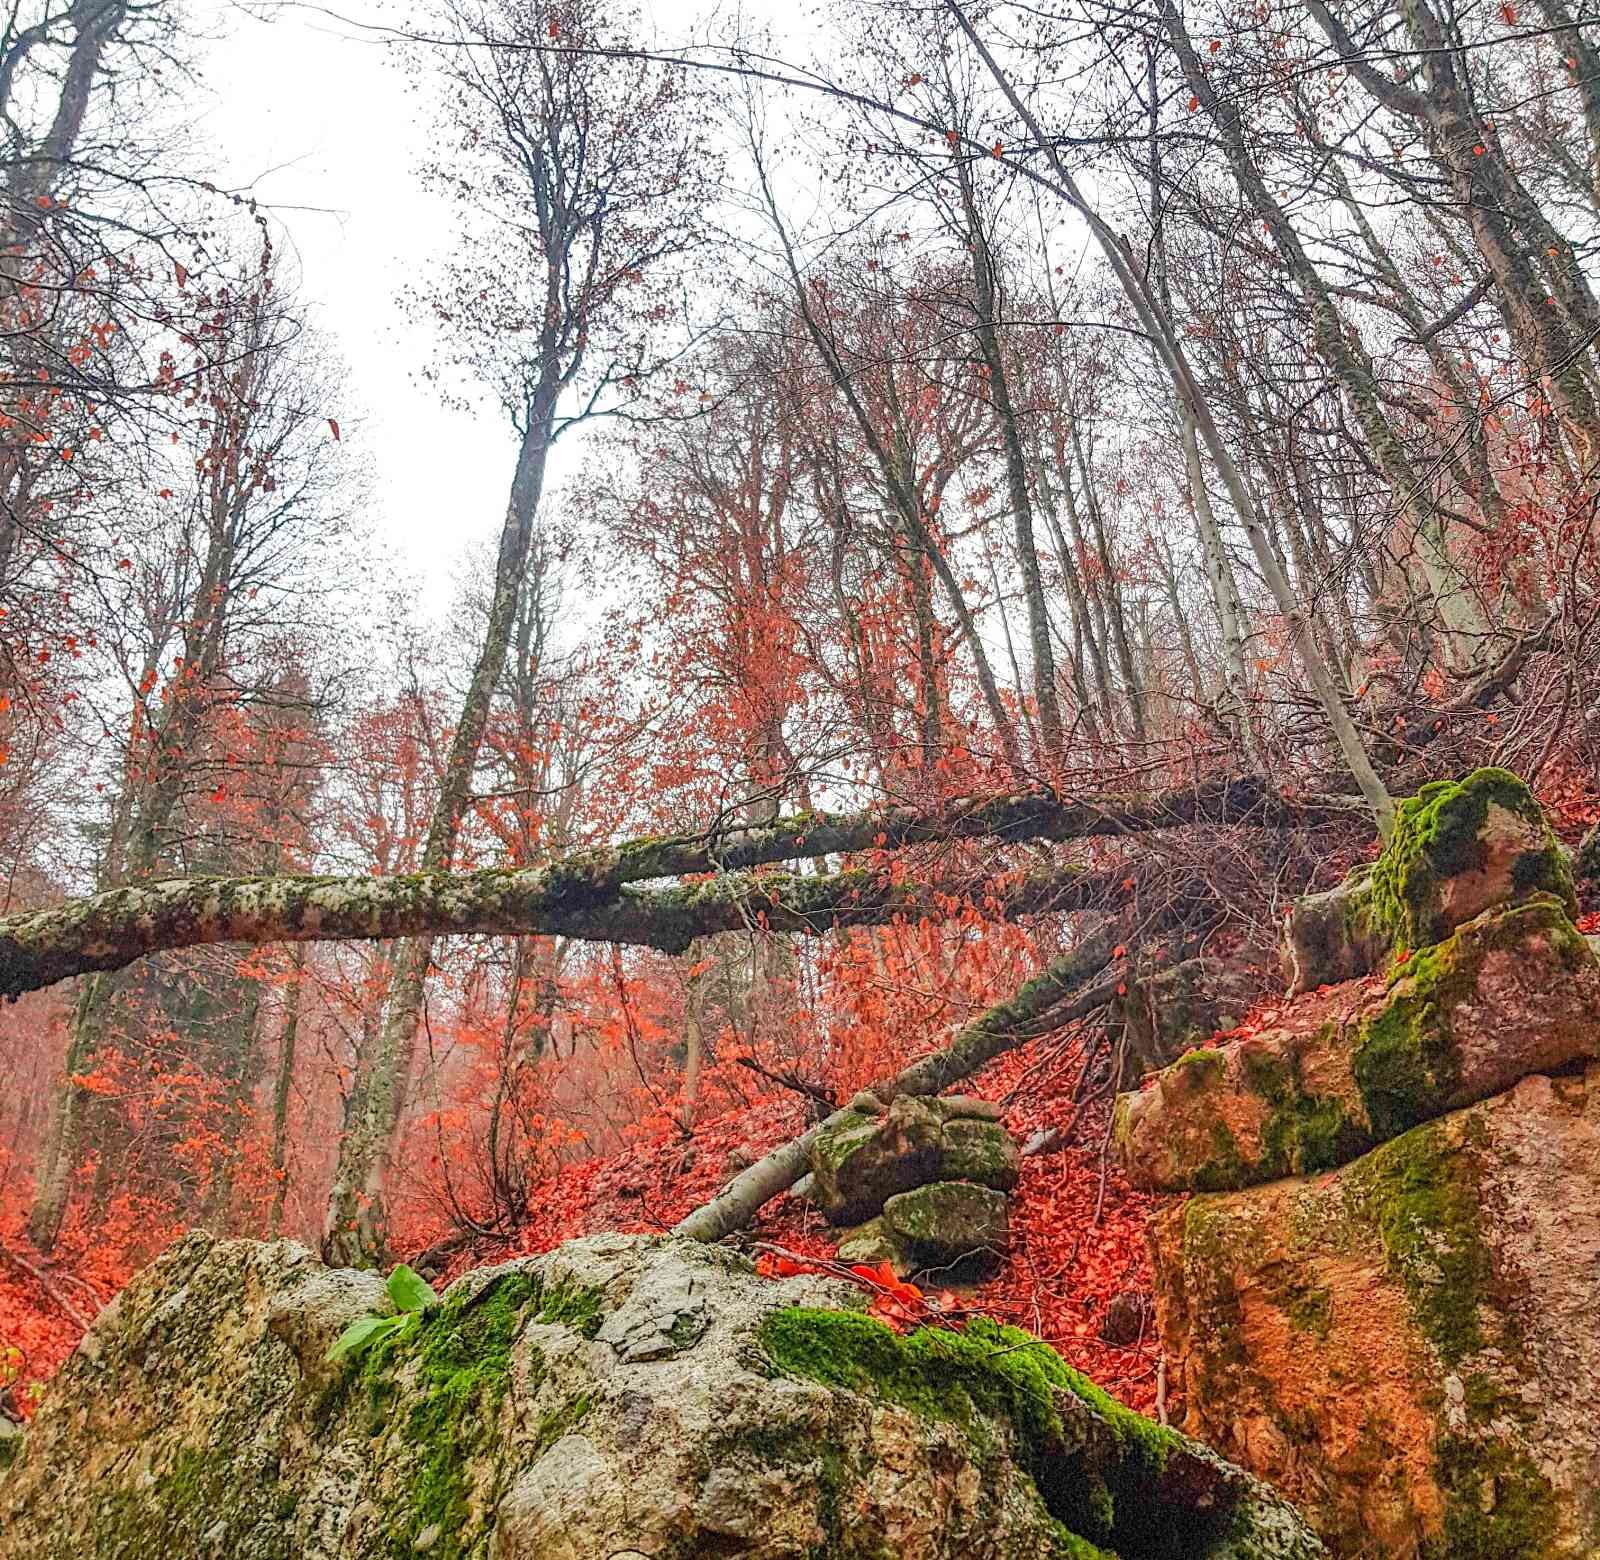 Ormanlarda yapraklar kızıla döndü, muhteşem manzaralar ortaya çıktı #kahramanmaras